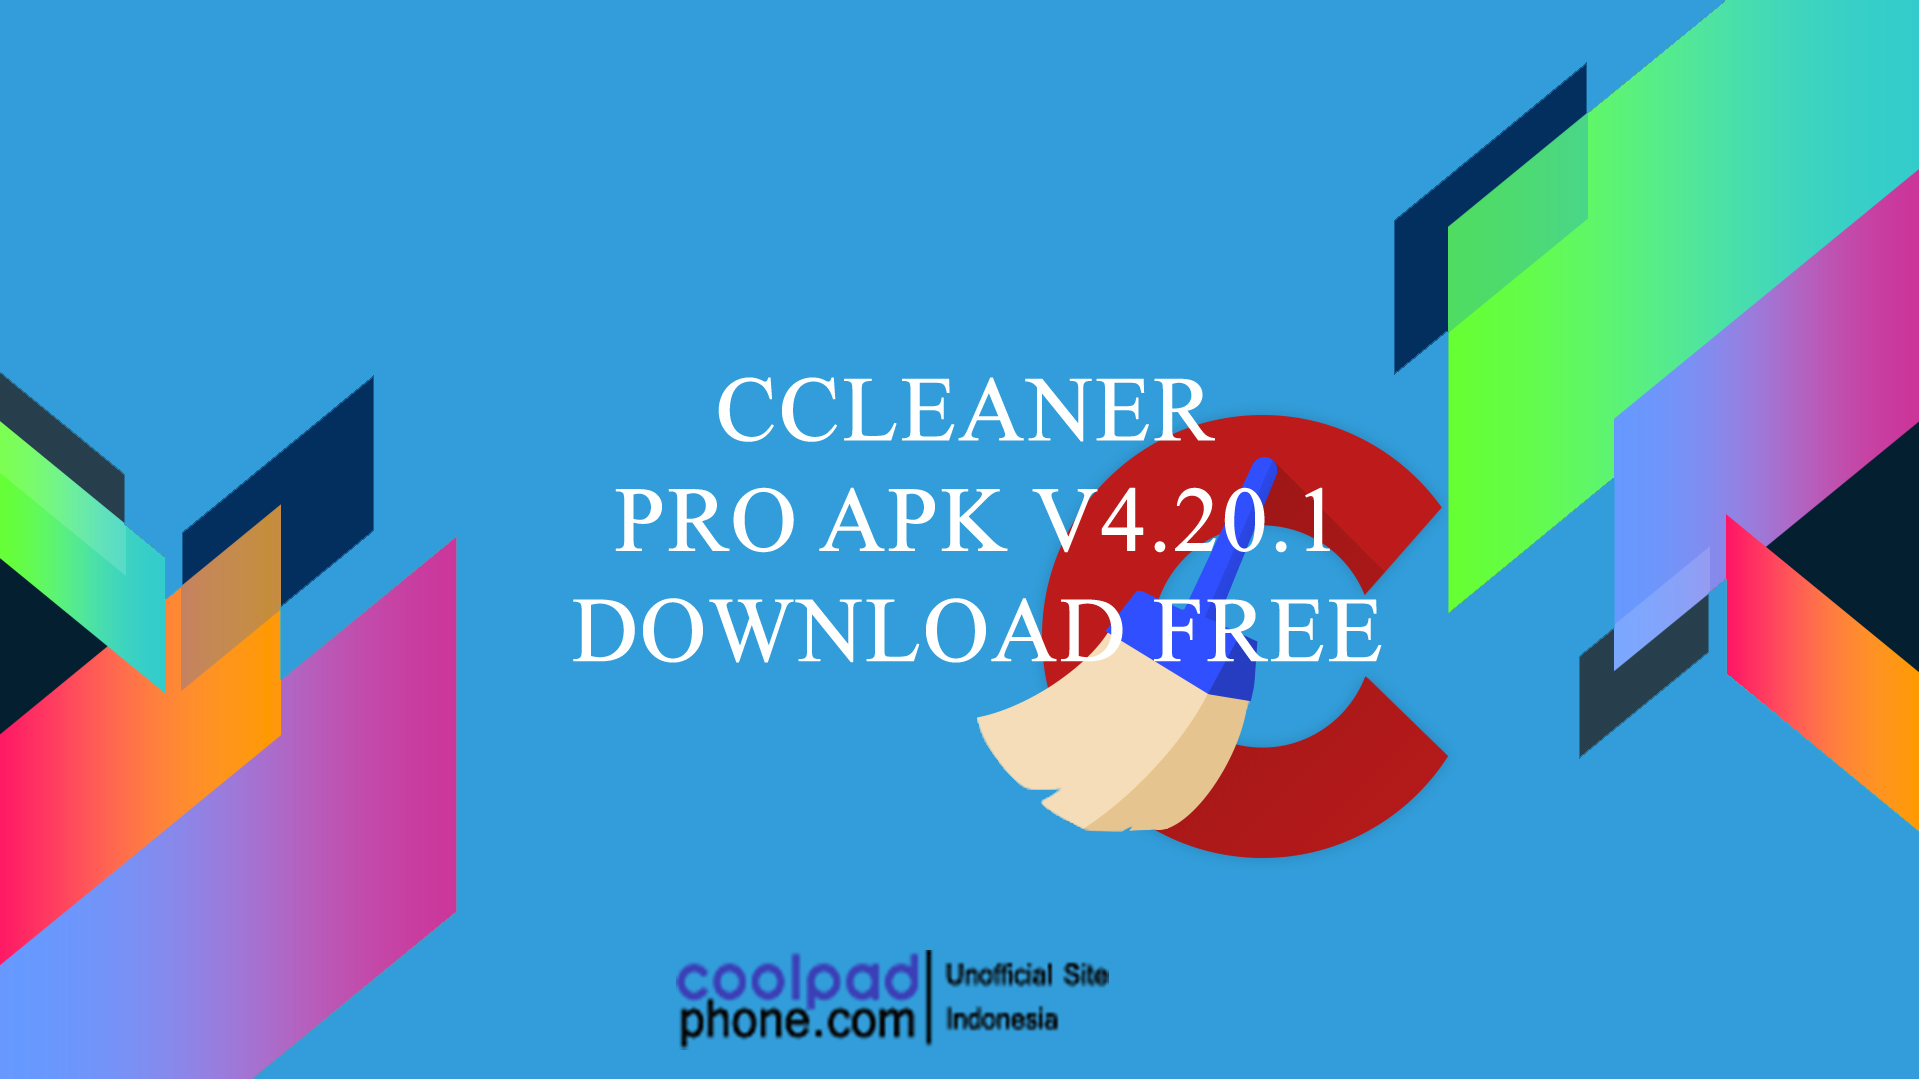 CCleaner Pro Apk v4.20.1 Download Free  CoolPadPhone.com